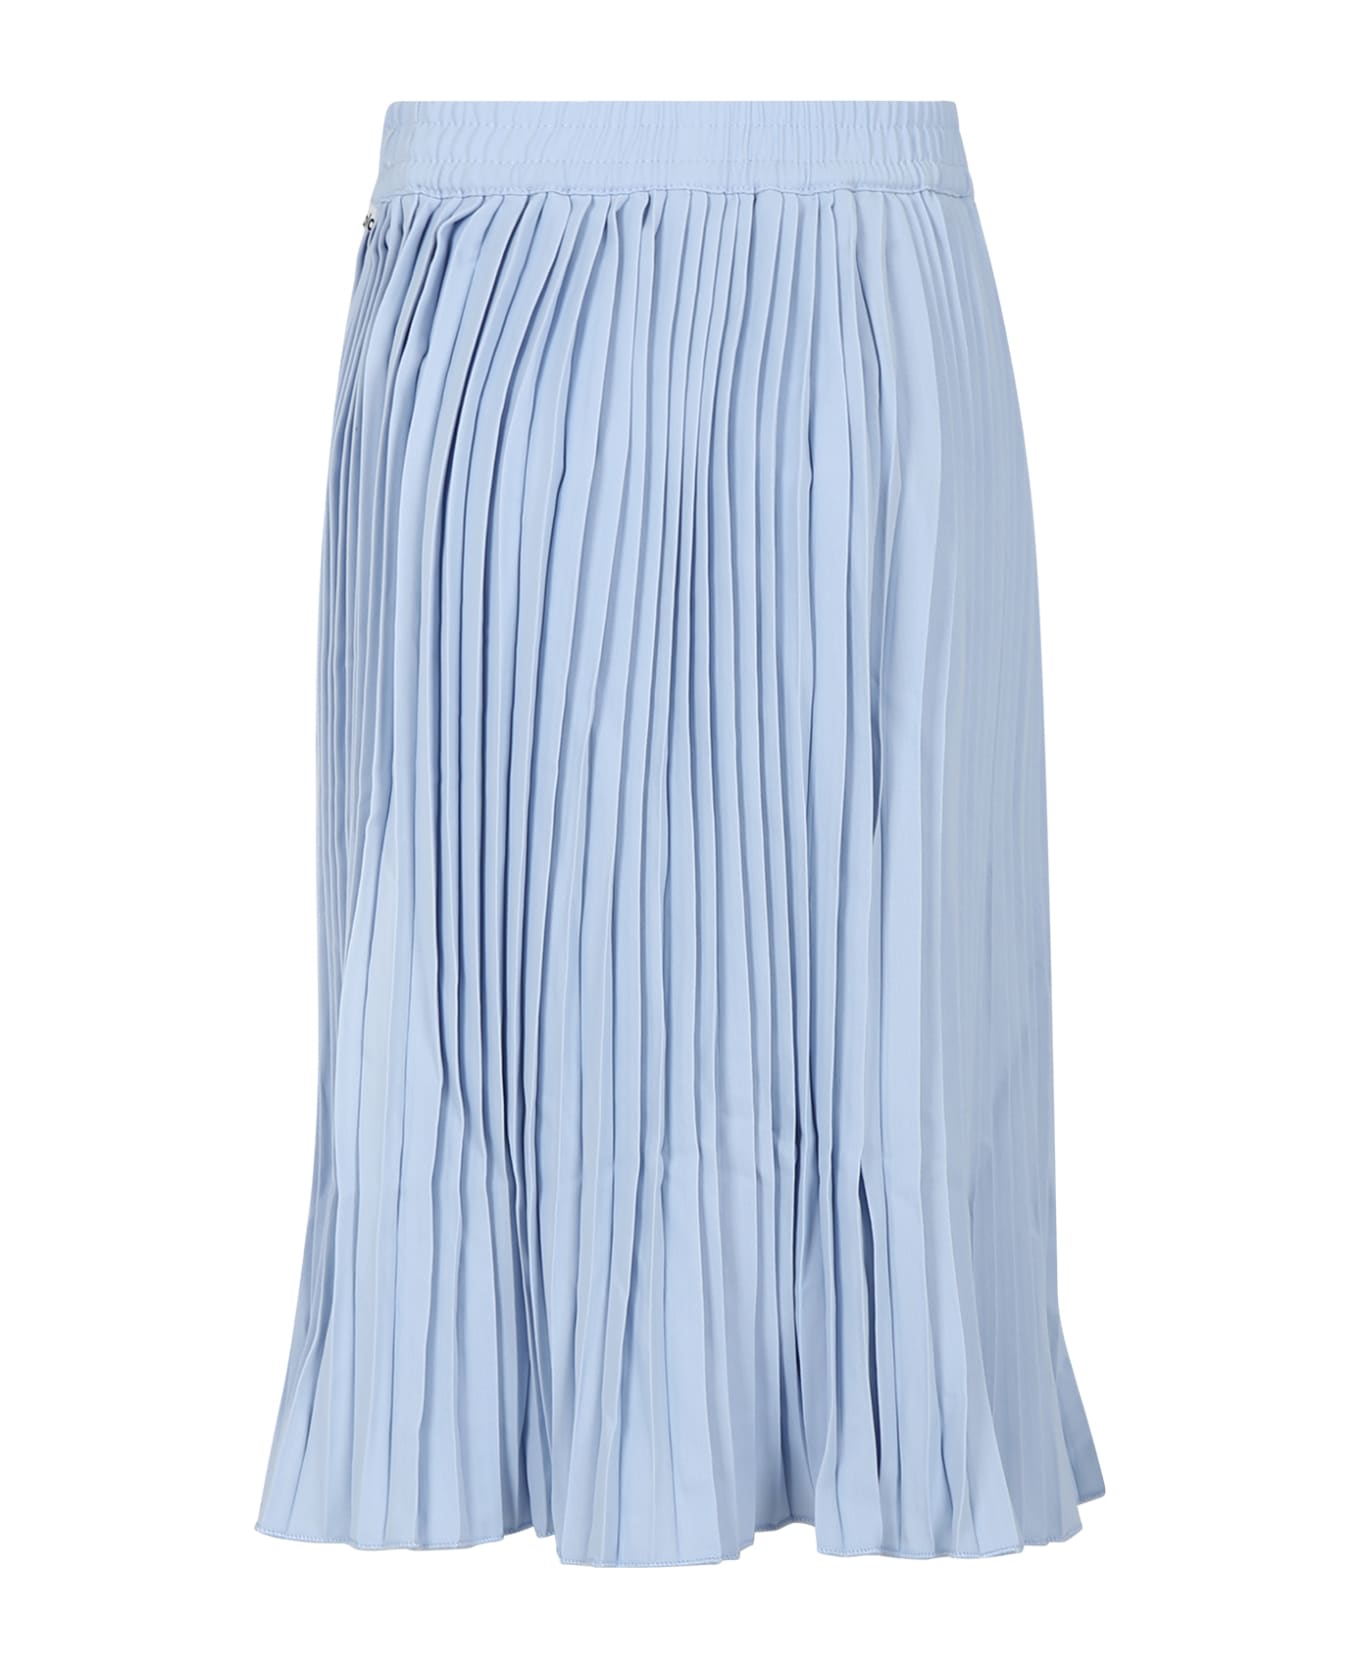 Molo Light Blue Casual Skirt Backa For Girl - Light Blue